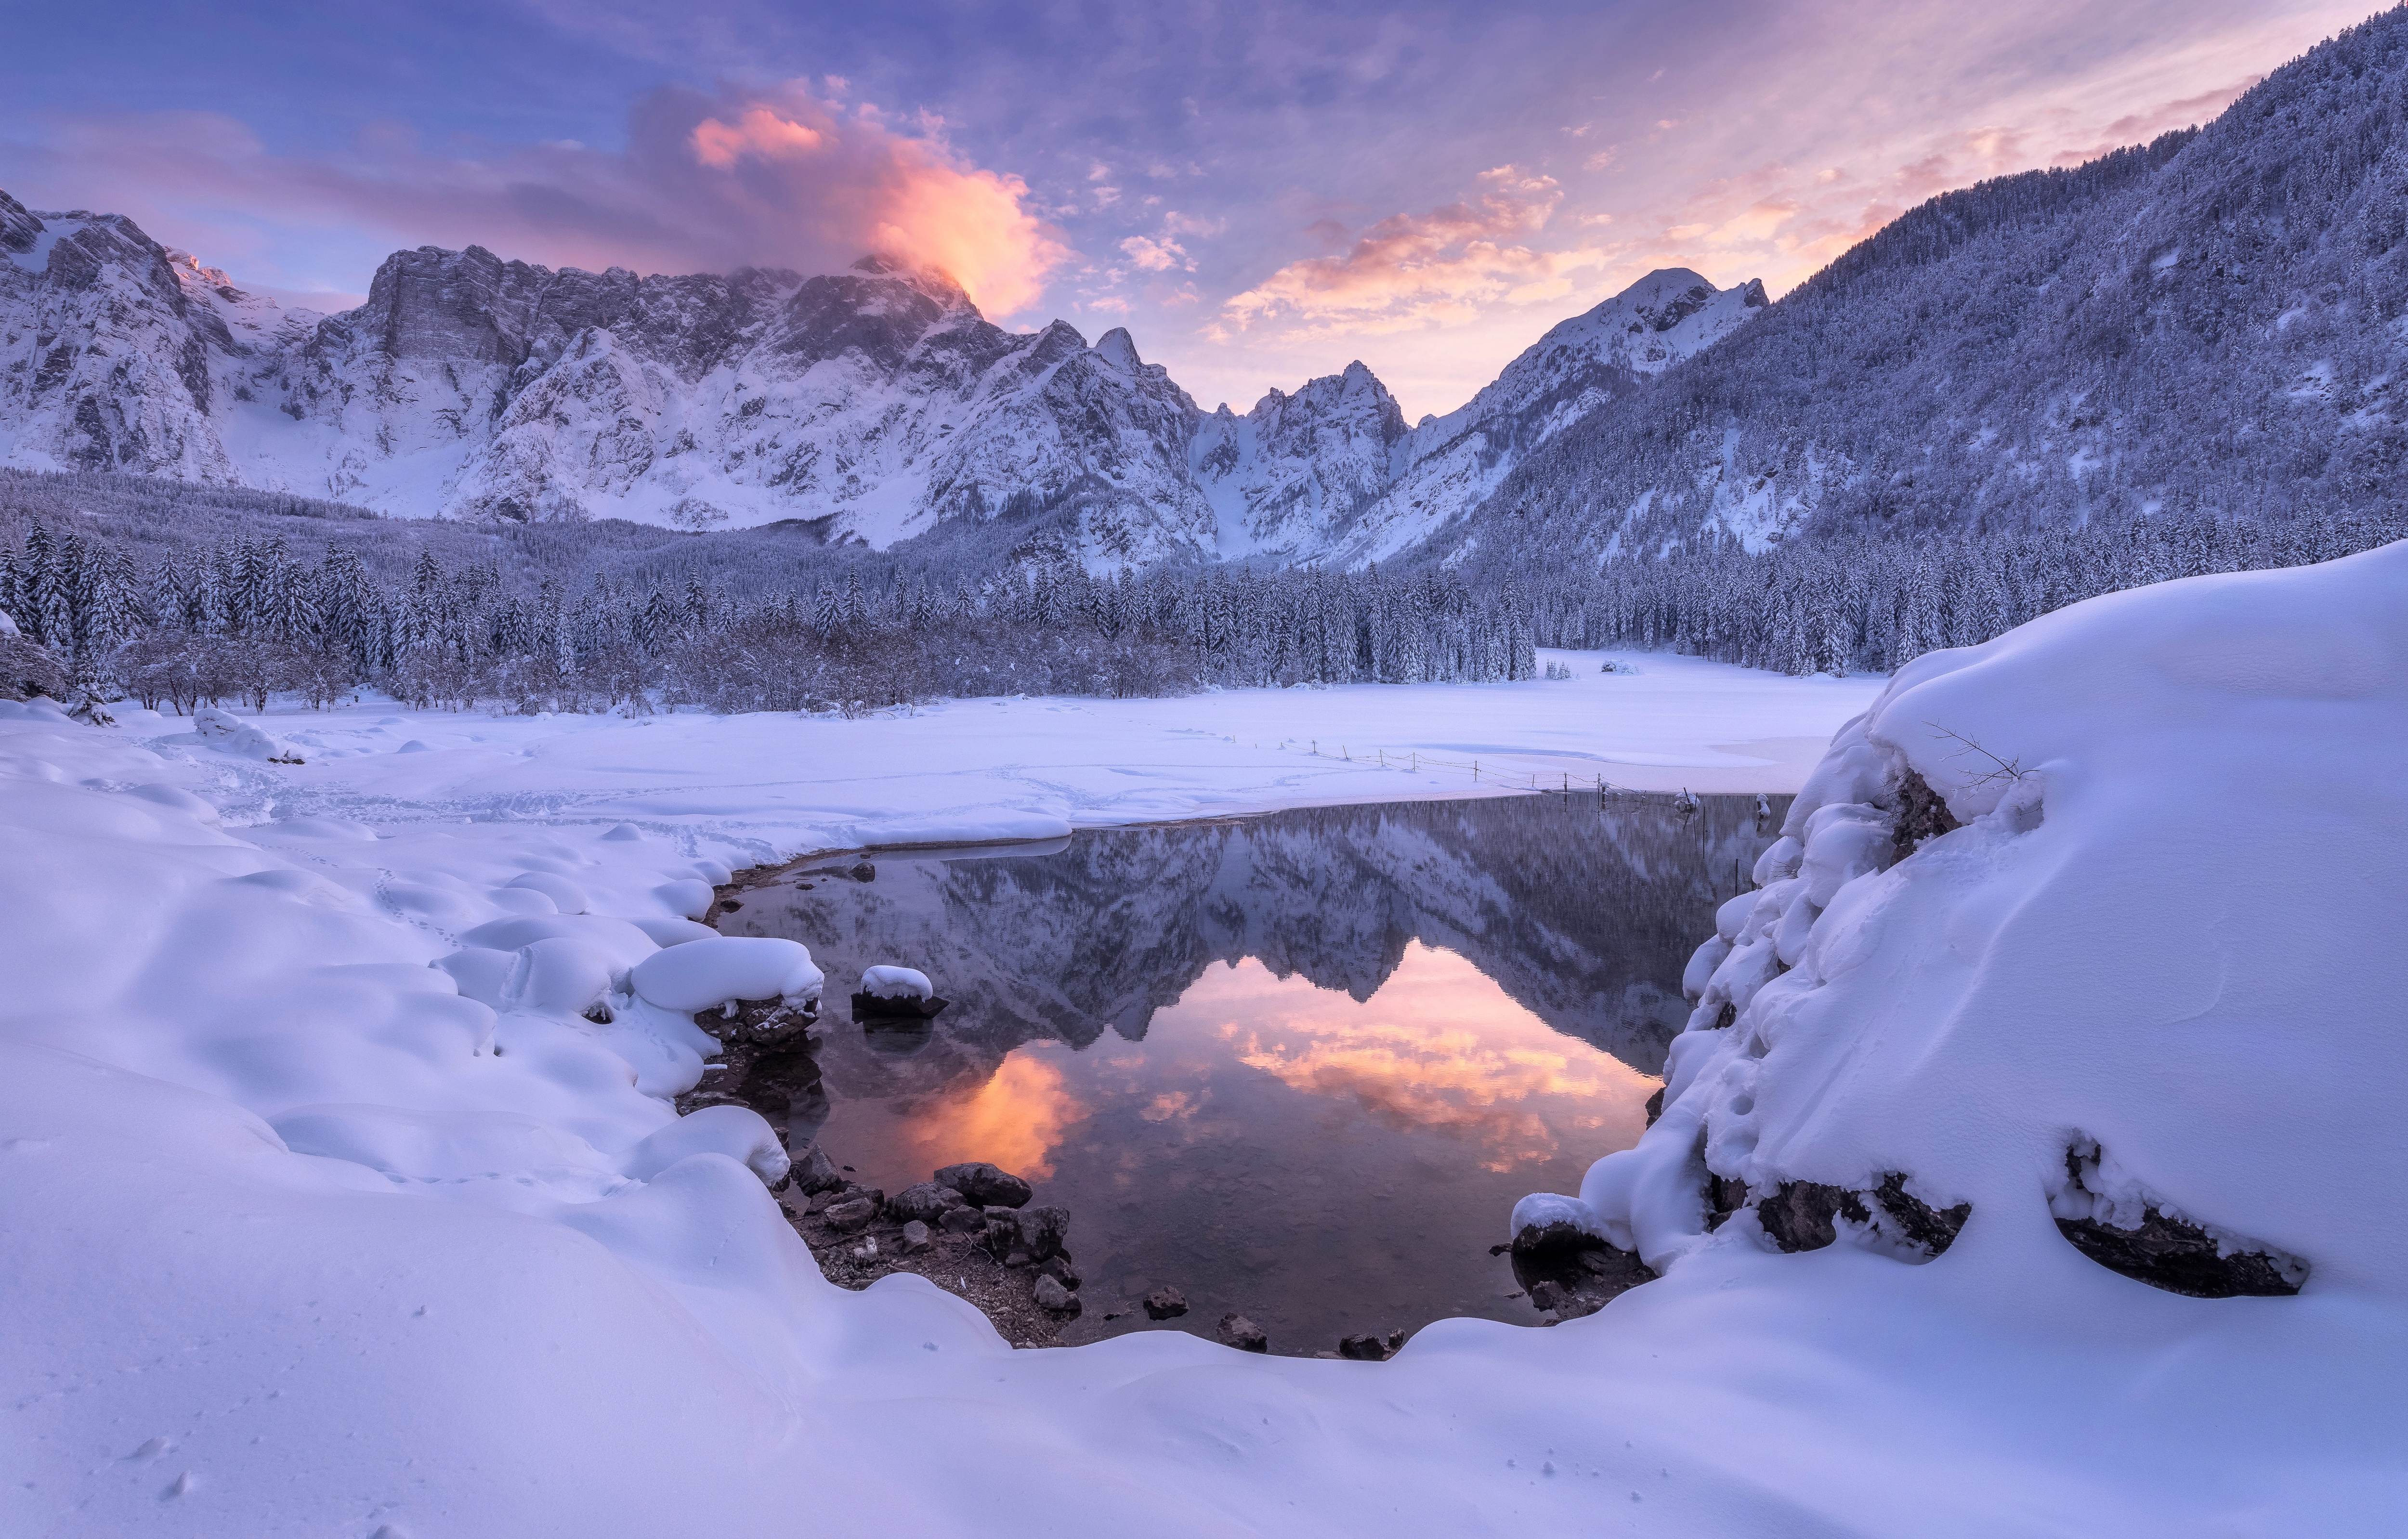 Скачать обои бесплатно Зима, Природа, Снег, Гора, Озеро, Отражение, Земля/природа картинка на рабочий стол ПК